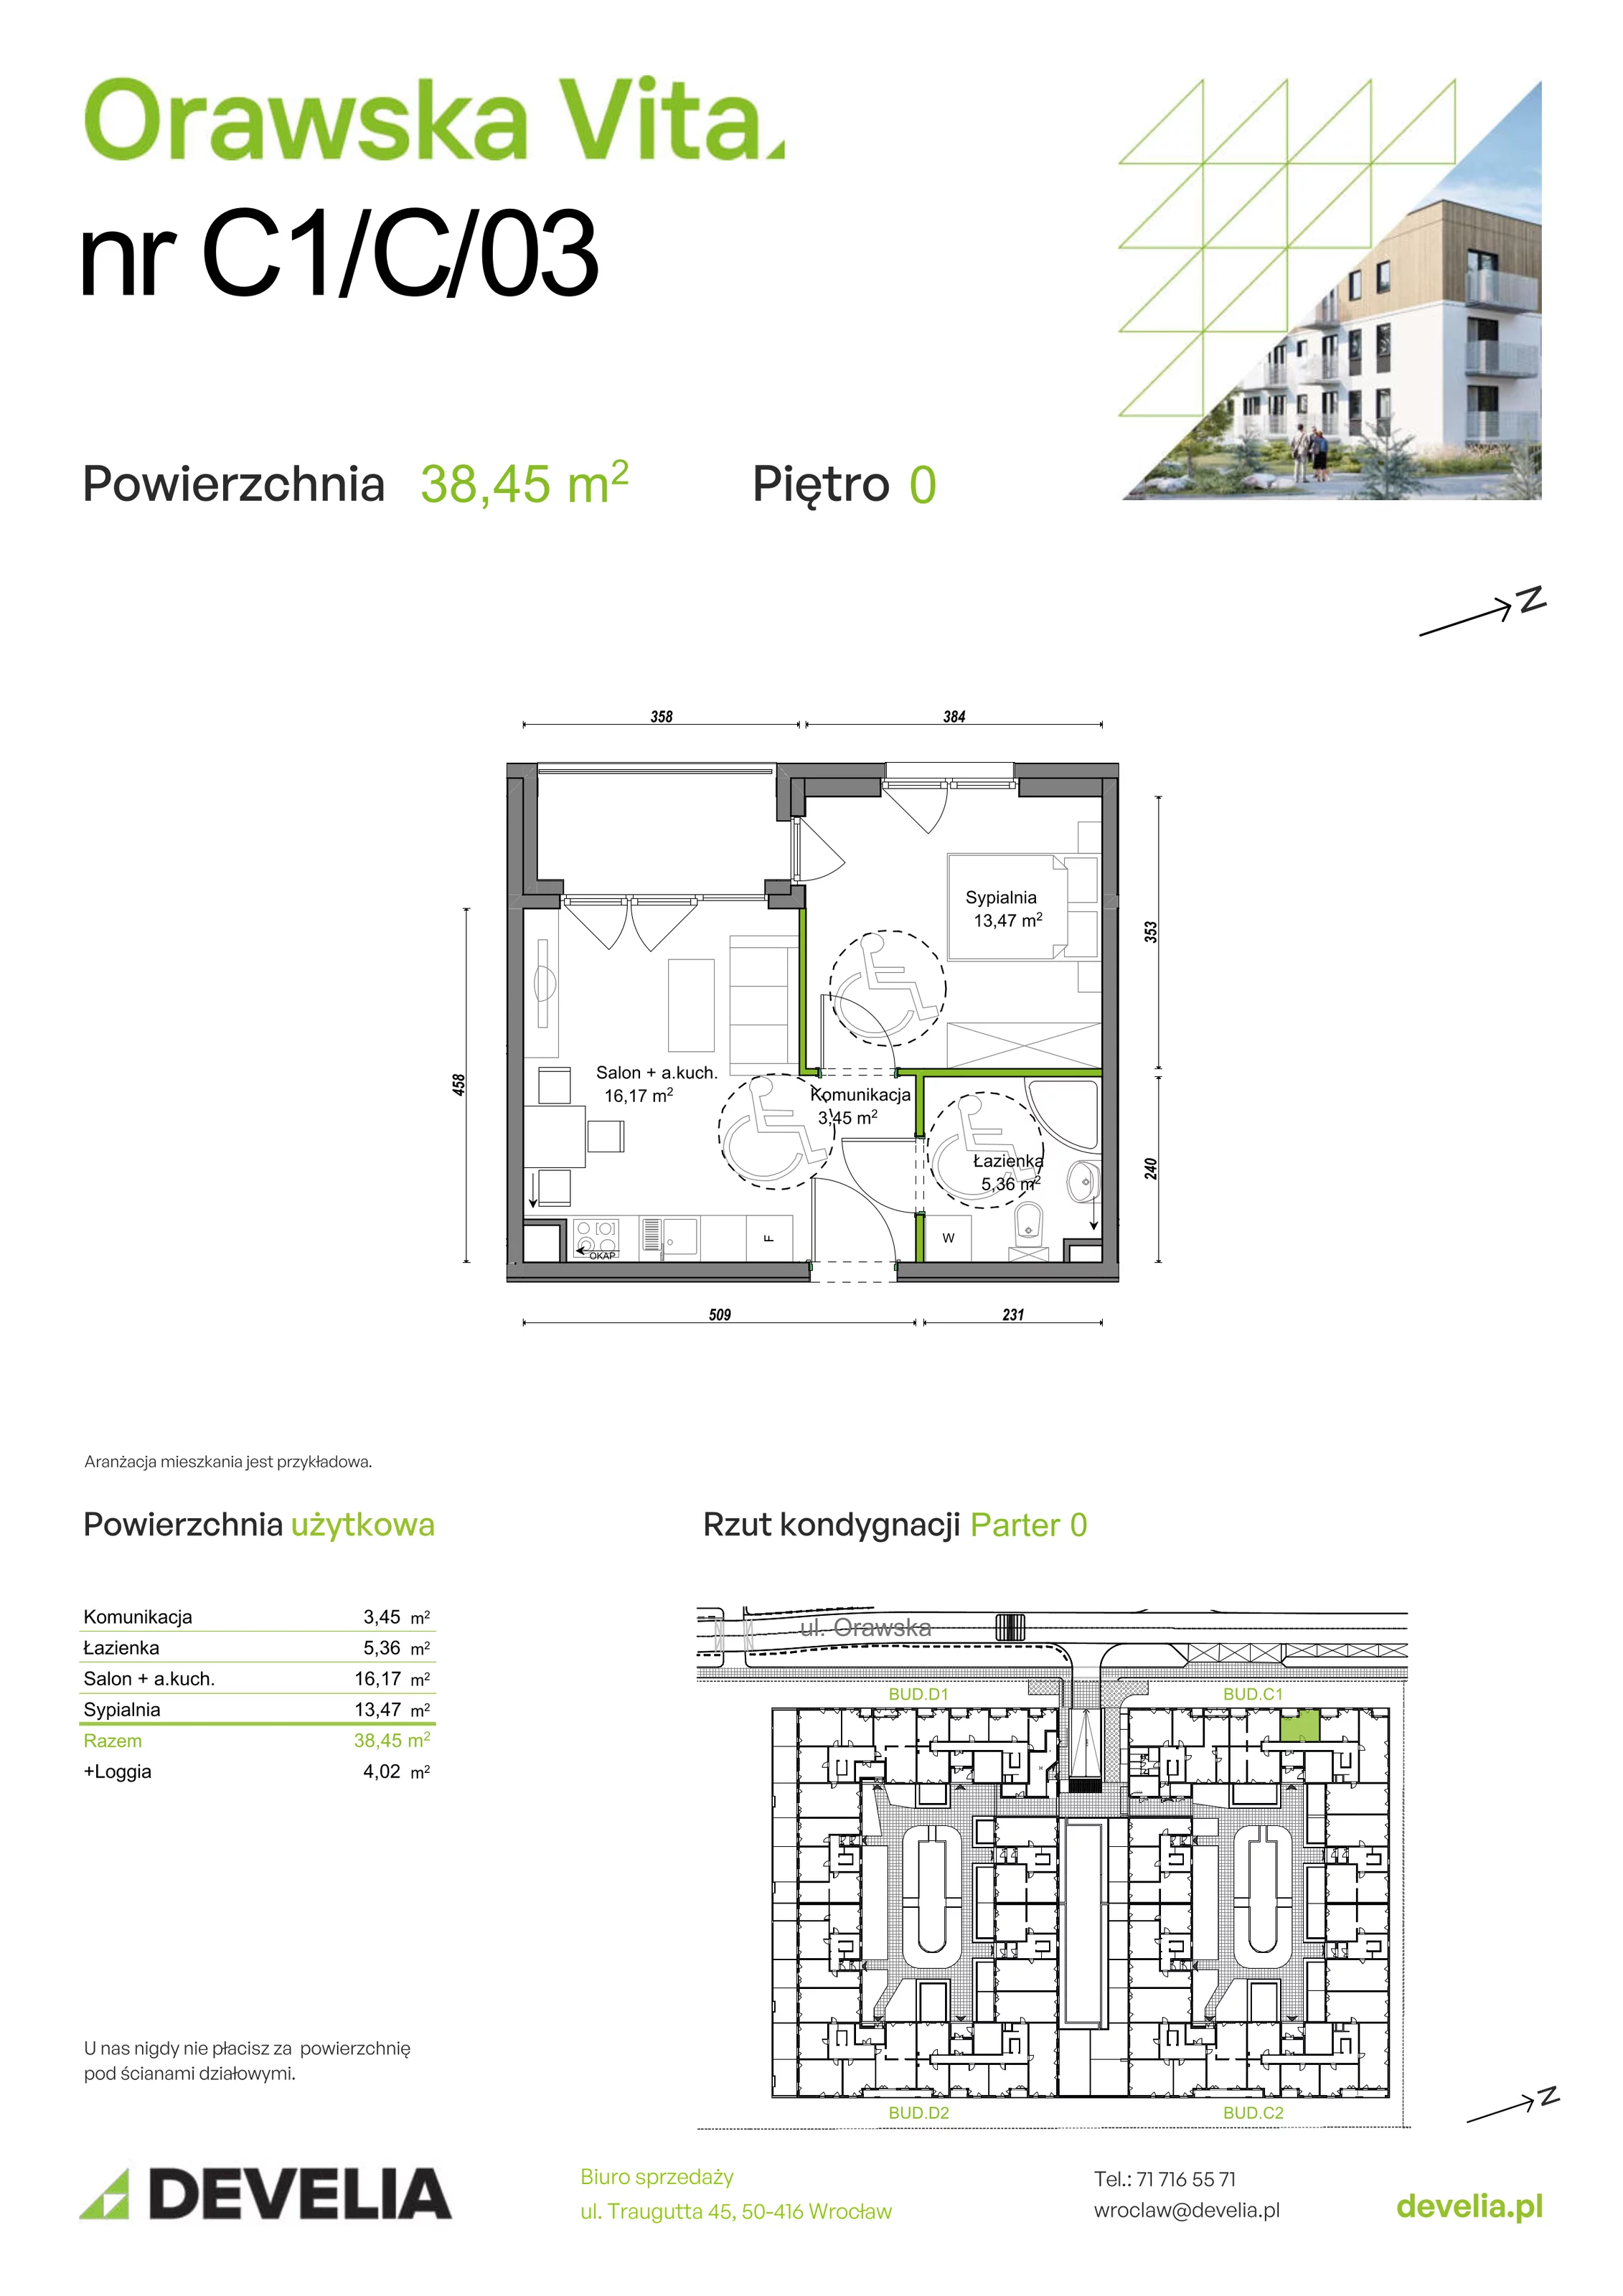 Mieszkanie 38,45 m², parter, oferta nr C1/C/03, Orawska Vita, Wrocław, Ołtaszyn, Krzyki, ul. Orawska 73